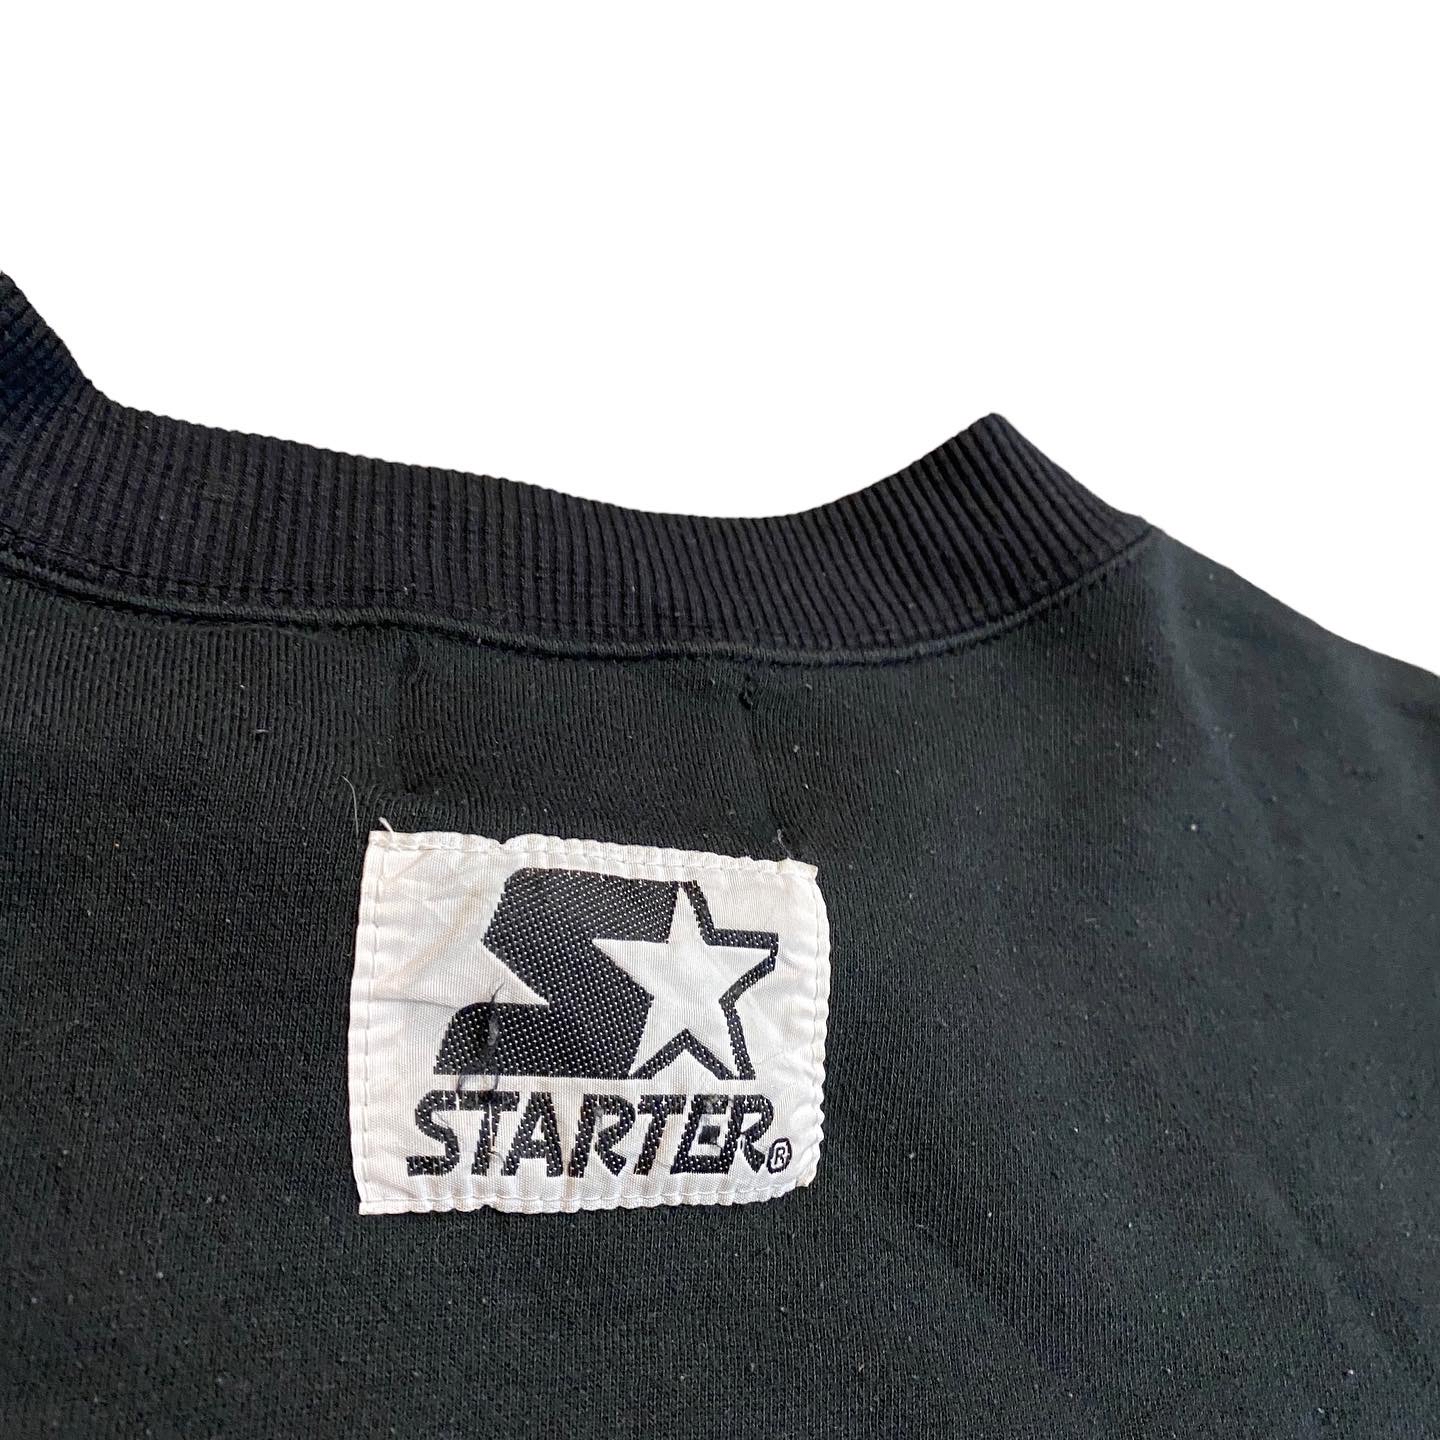 ビンテージ 90年代 スティーラーズ ロゴ刺繍 スウェット XL ブラック